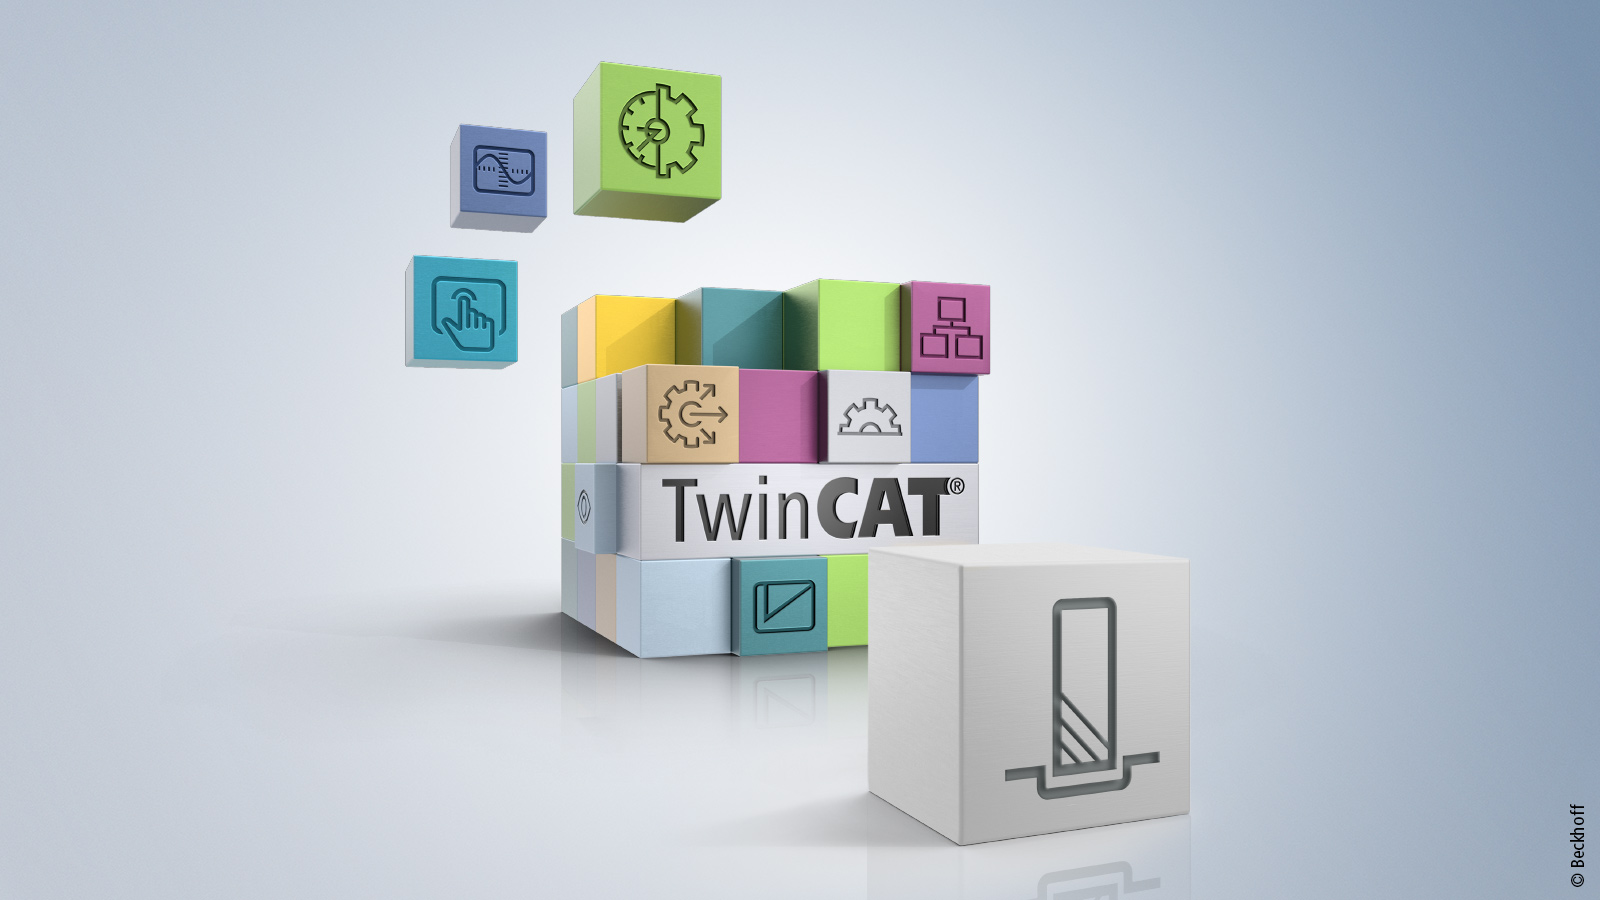 TwinCAT 3 CNC Milling Base 是一款综合循环程序包，拥有可参数化和可重复使用的程序模块，可以简化钻床和铣床的编程工作